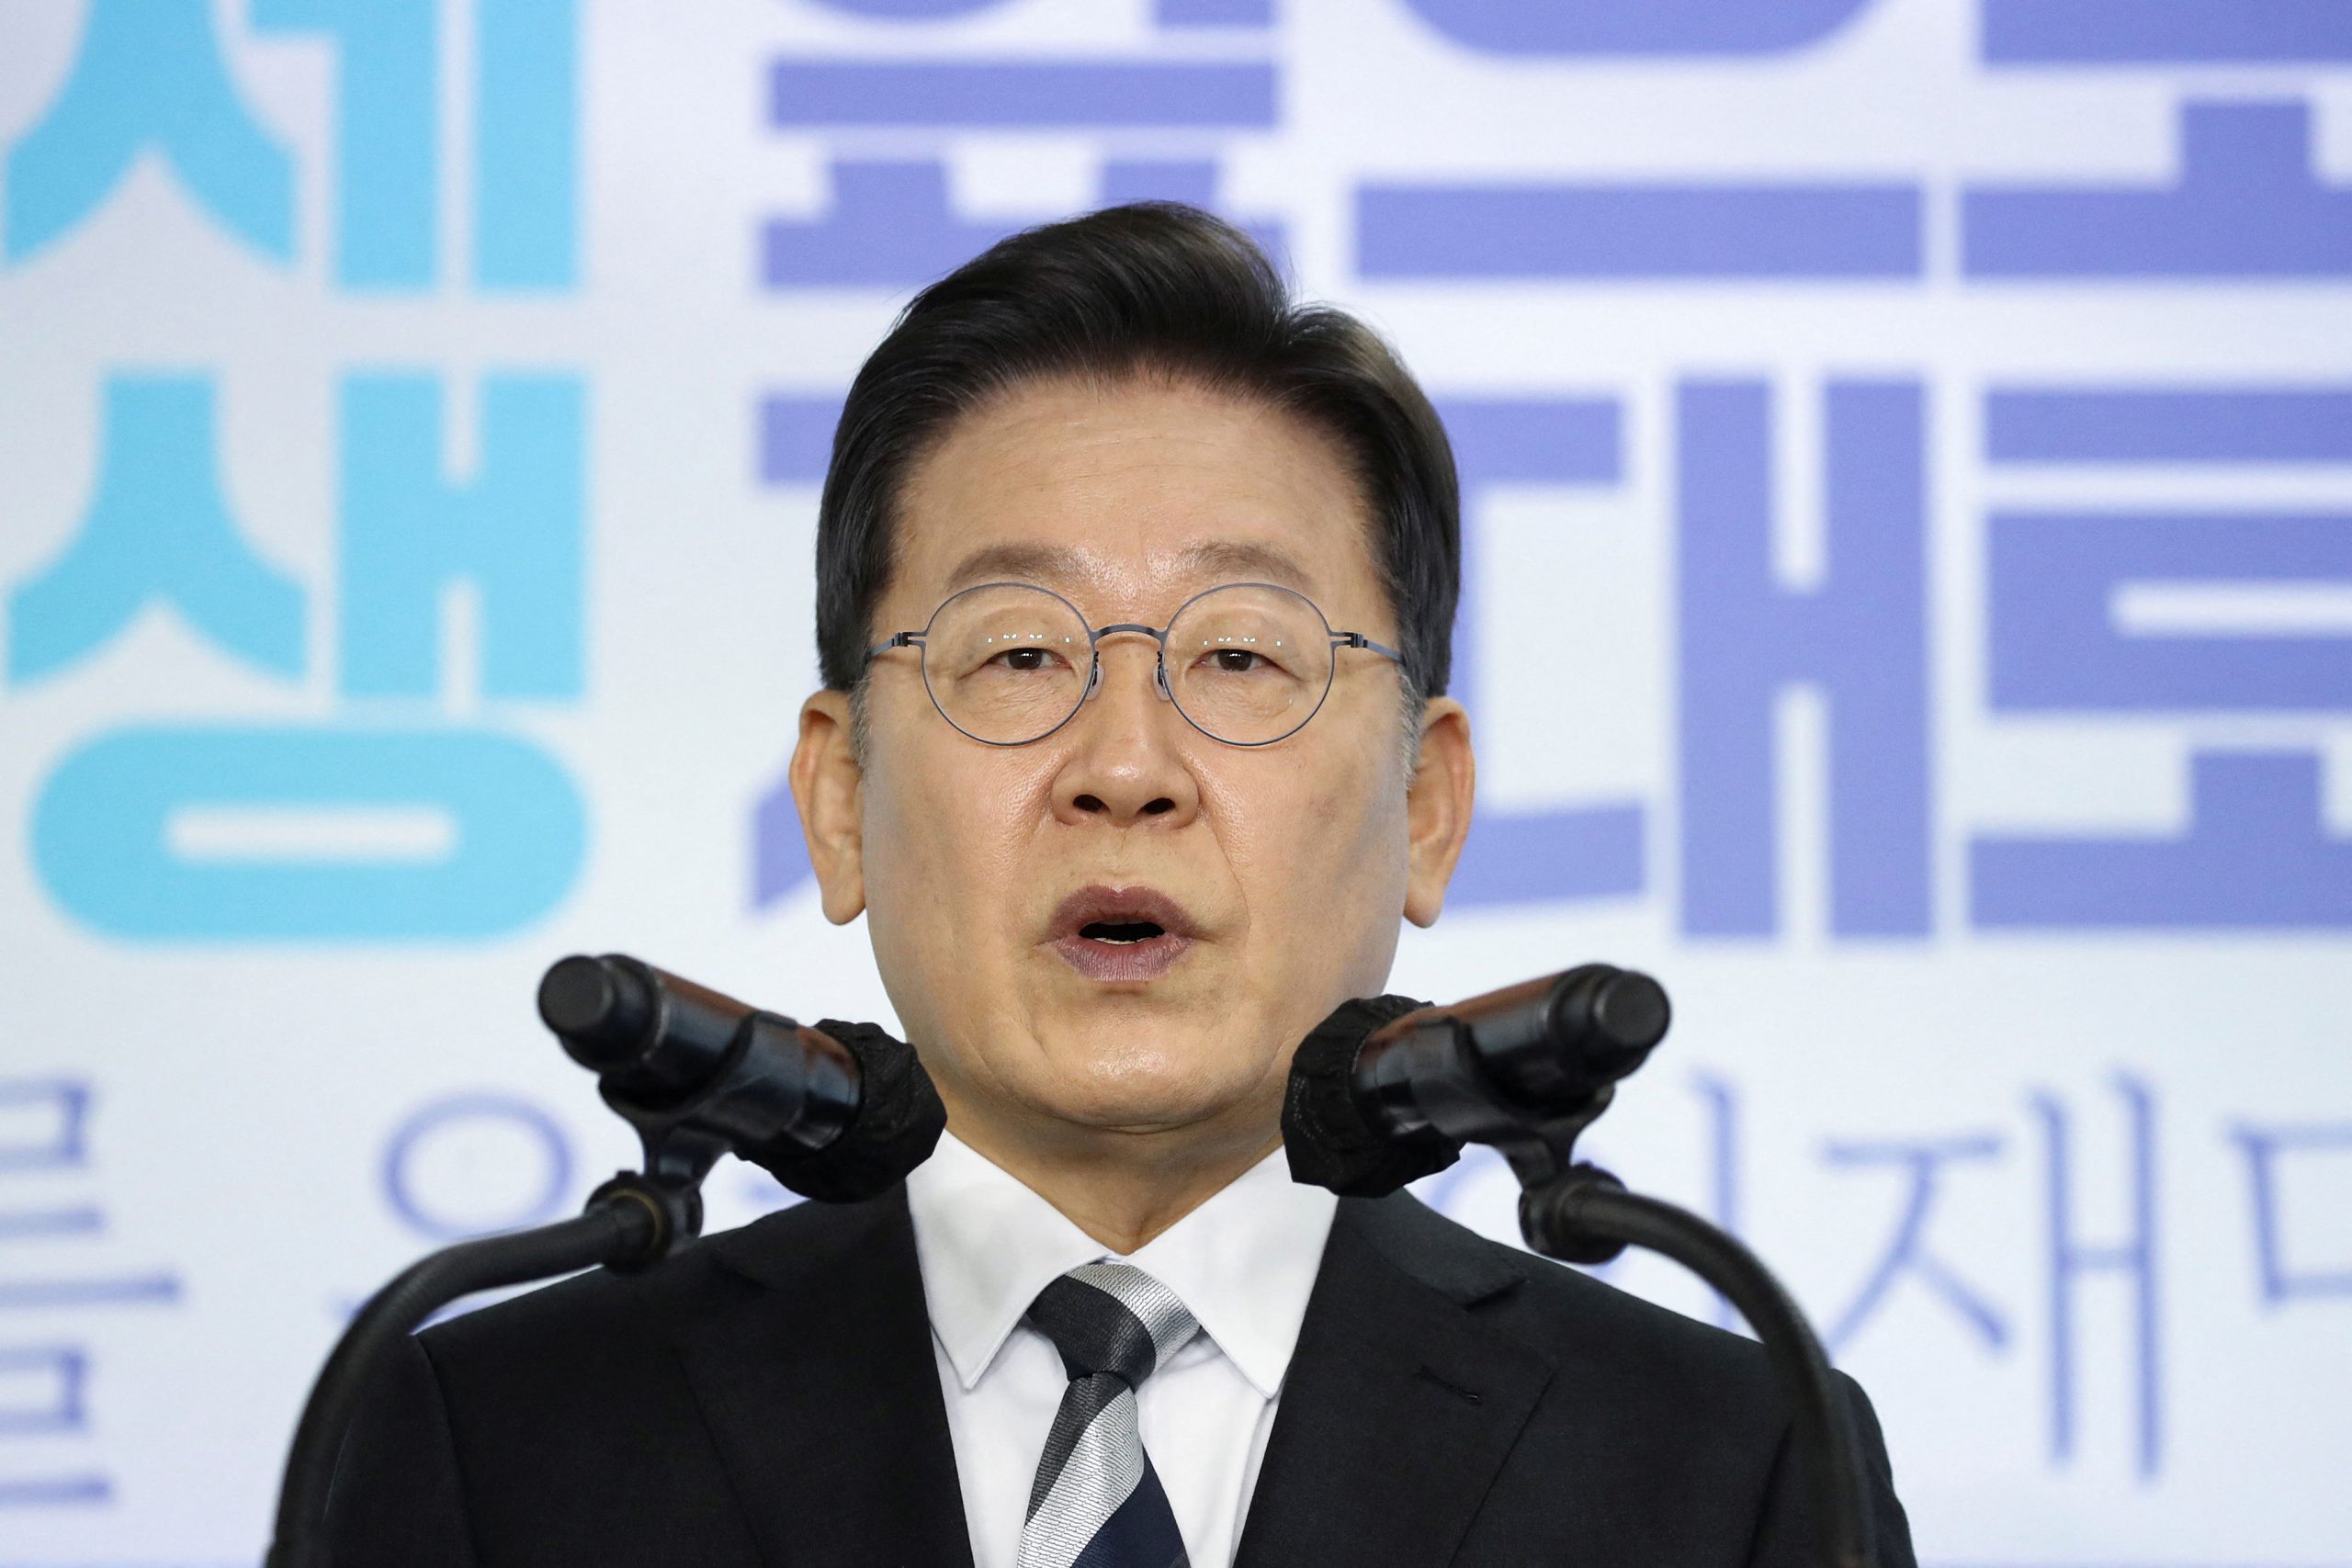 Kandidati për president në Korenë e Jugut premton trajtim falas për rënien e flokut nëqoftëse fiton zgjedhjet